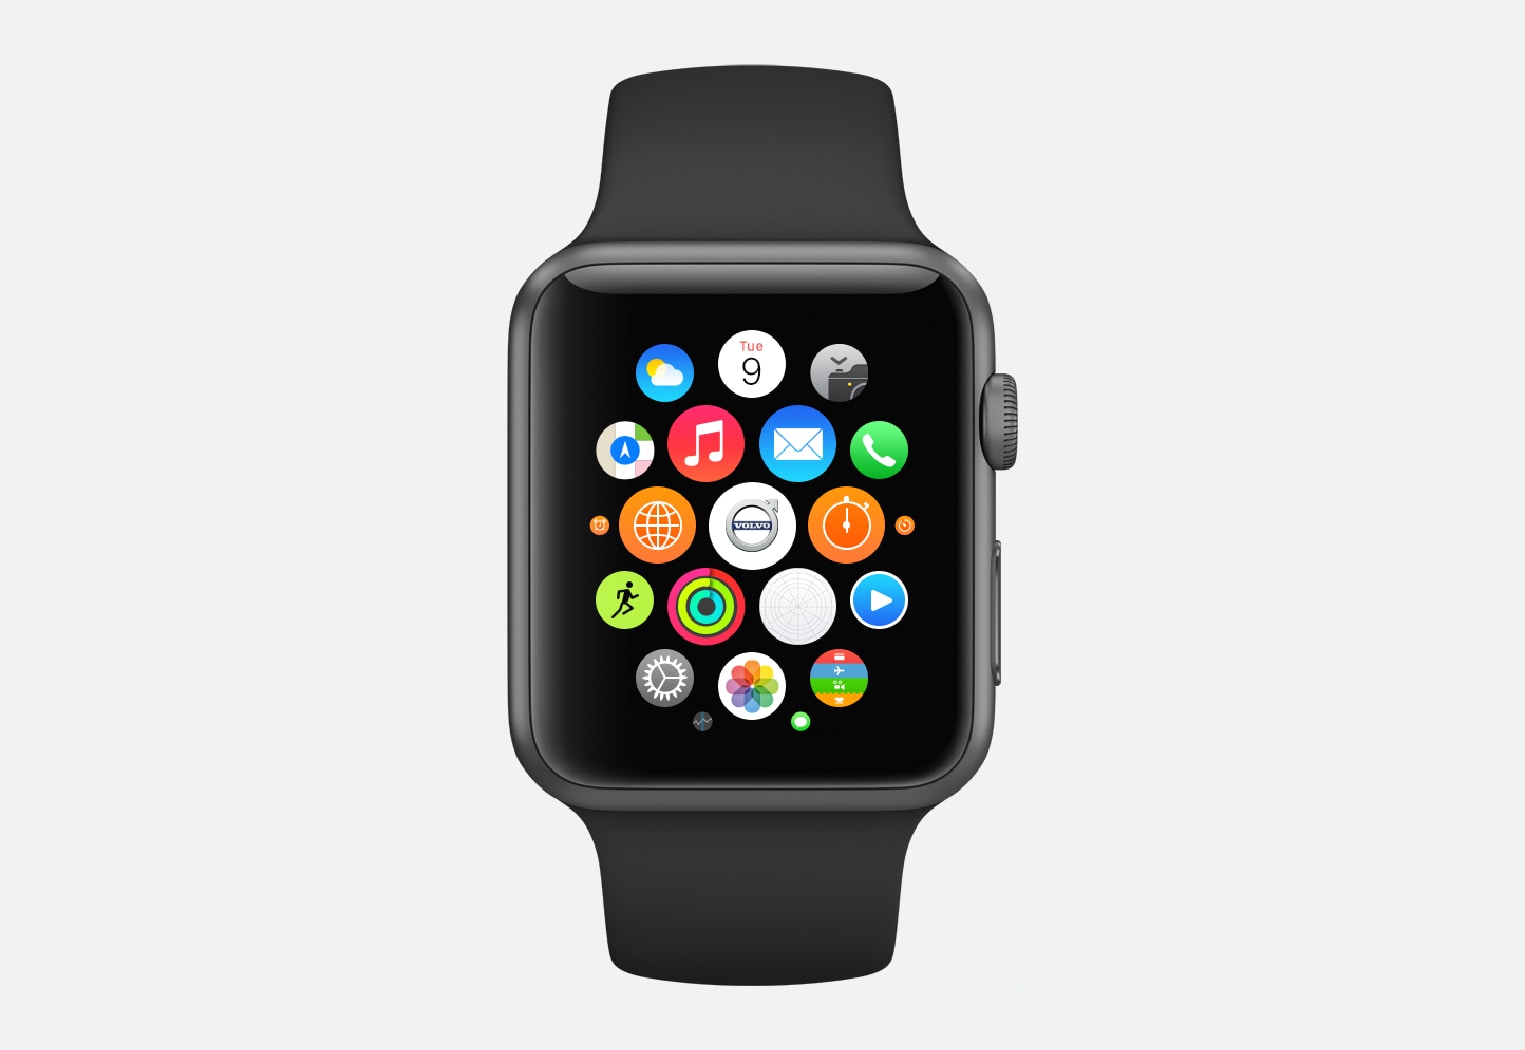 多个volvo on call功能可通过智能手表(apple watch和android wear)